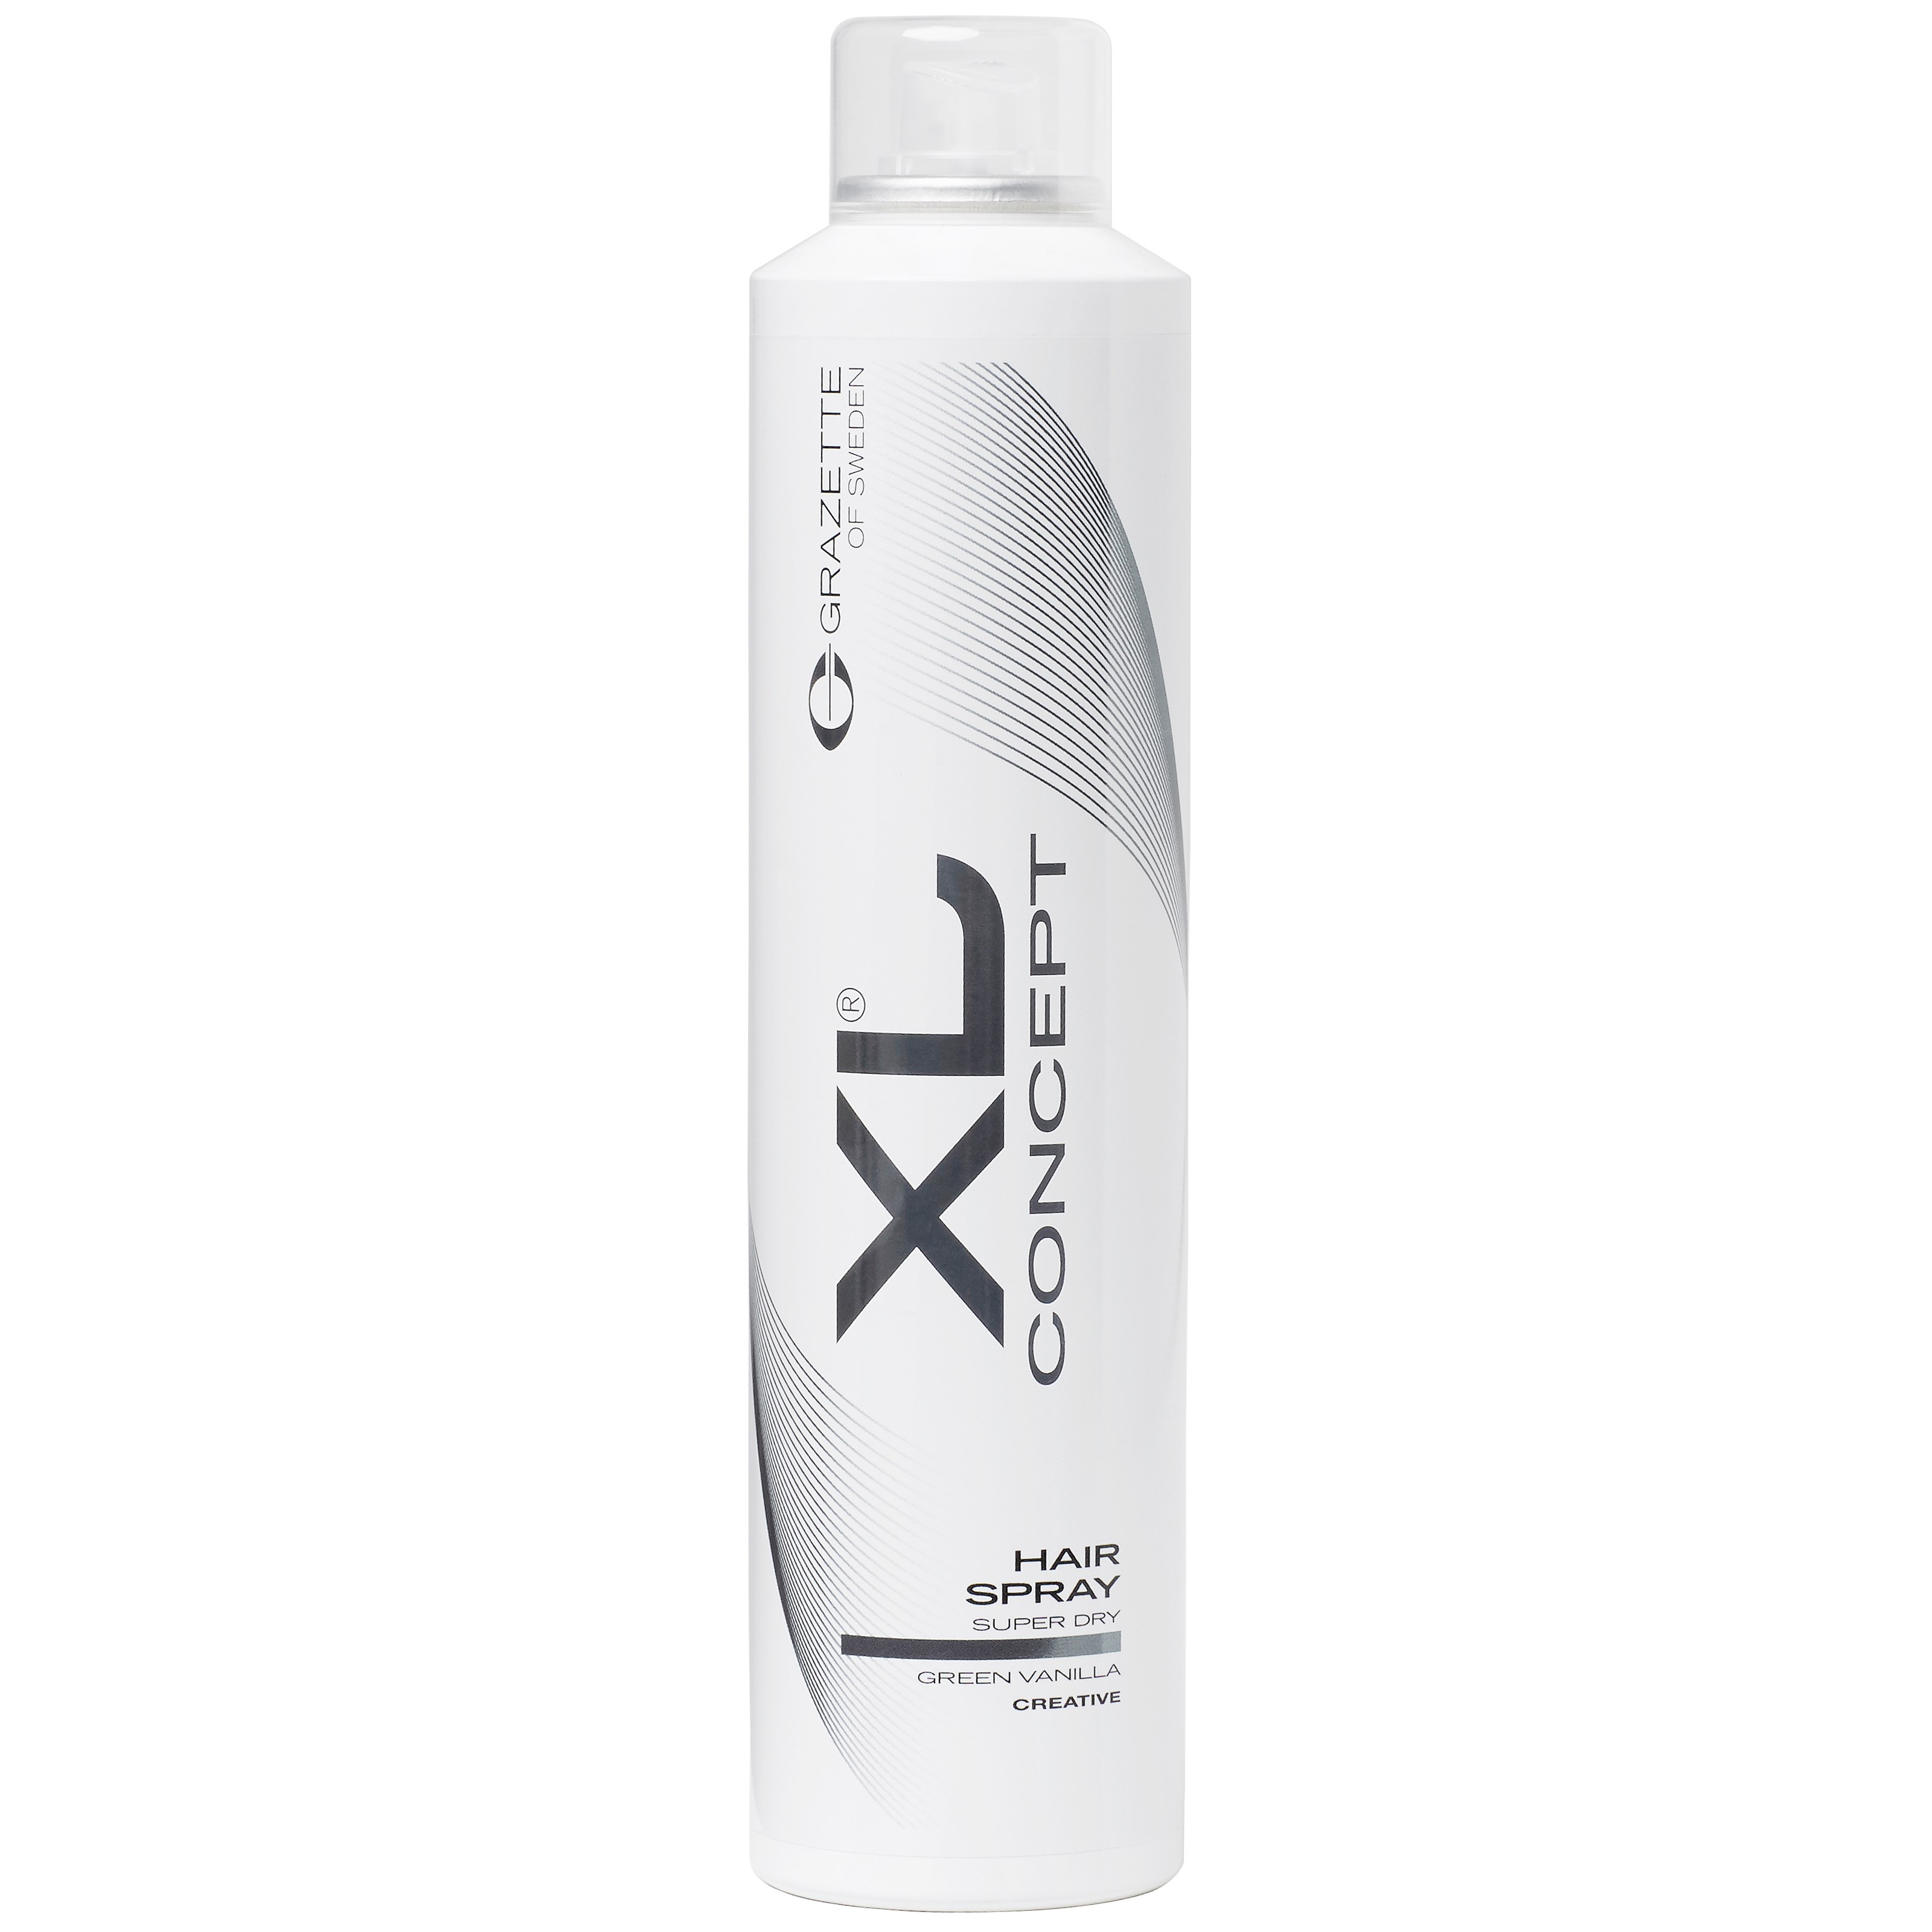 Grazette XL Hairspray Super Dry 300 ml